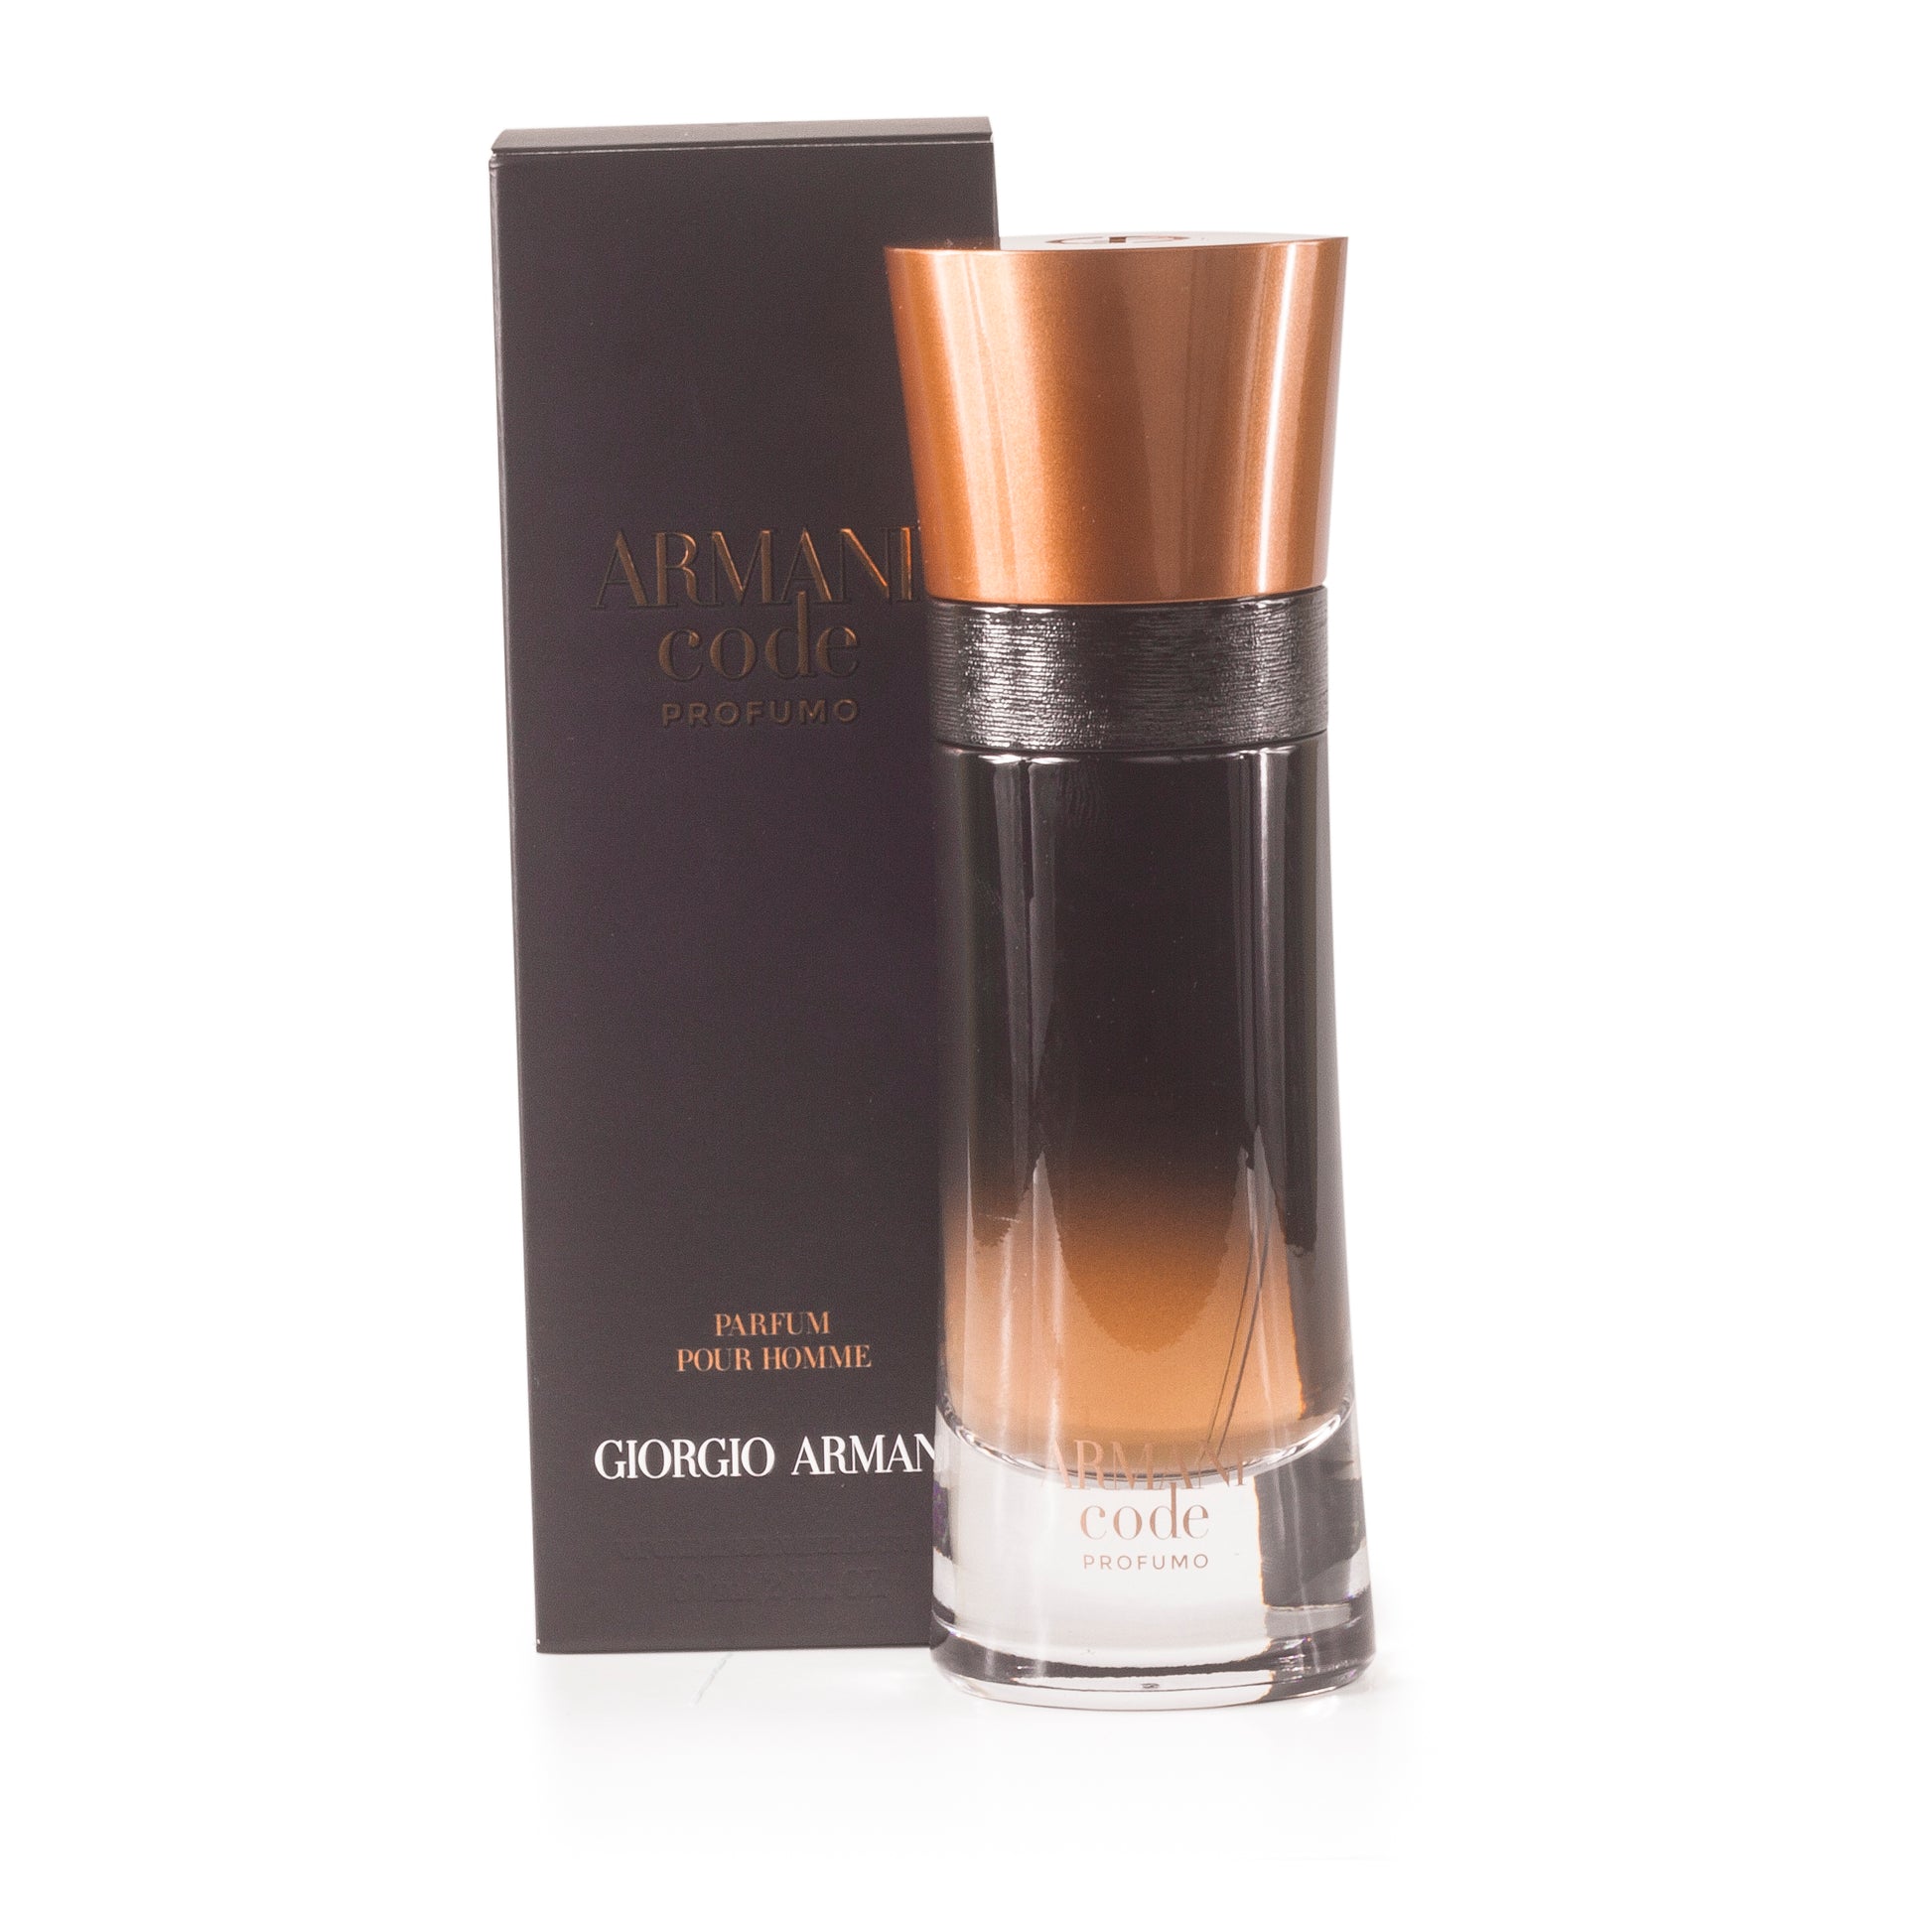 Armani Code Profumo Parfum Spray for Men by Giorgio Armani 2.0 oz. Click to open in modal